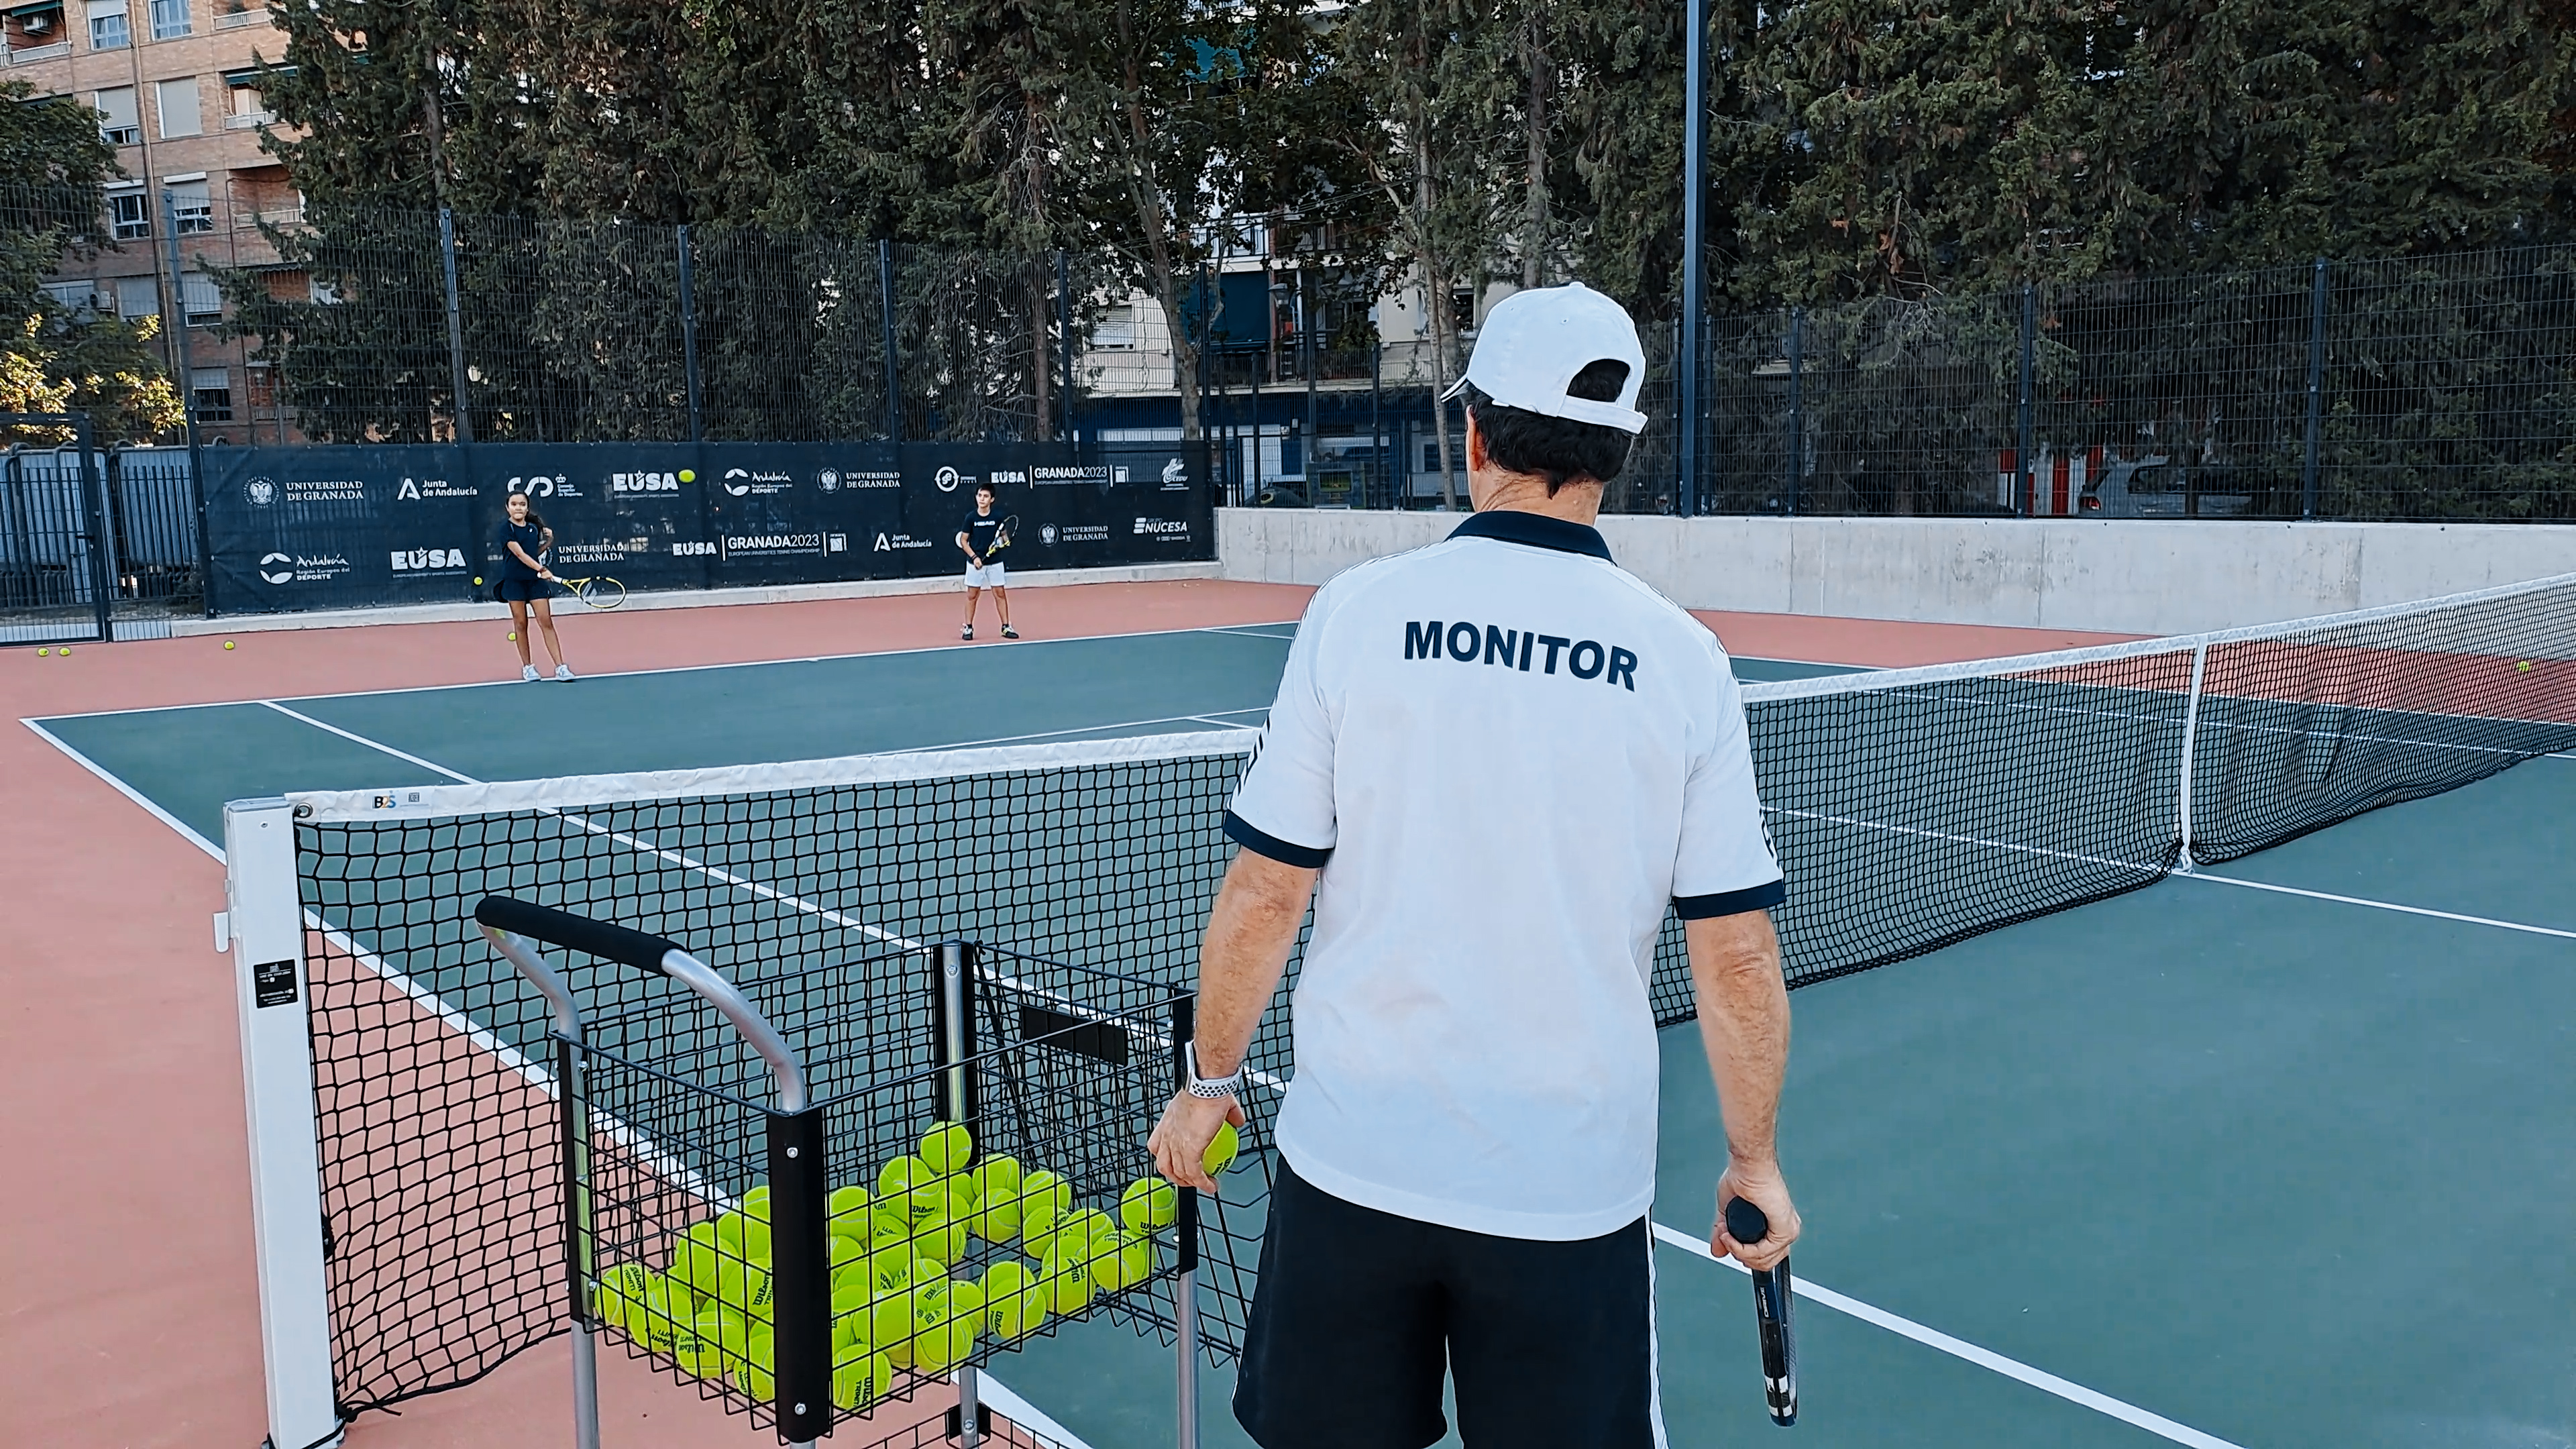 monitor de tenis en las pistas nuevas